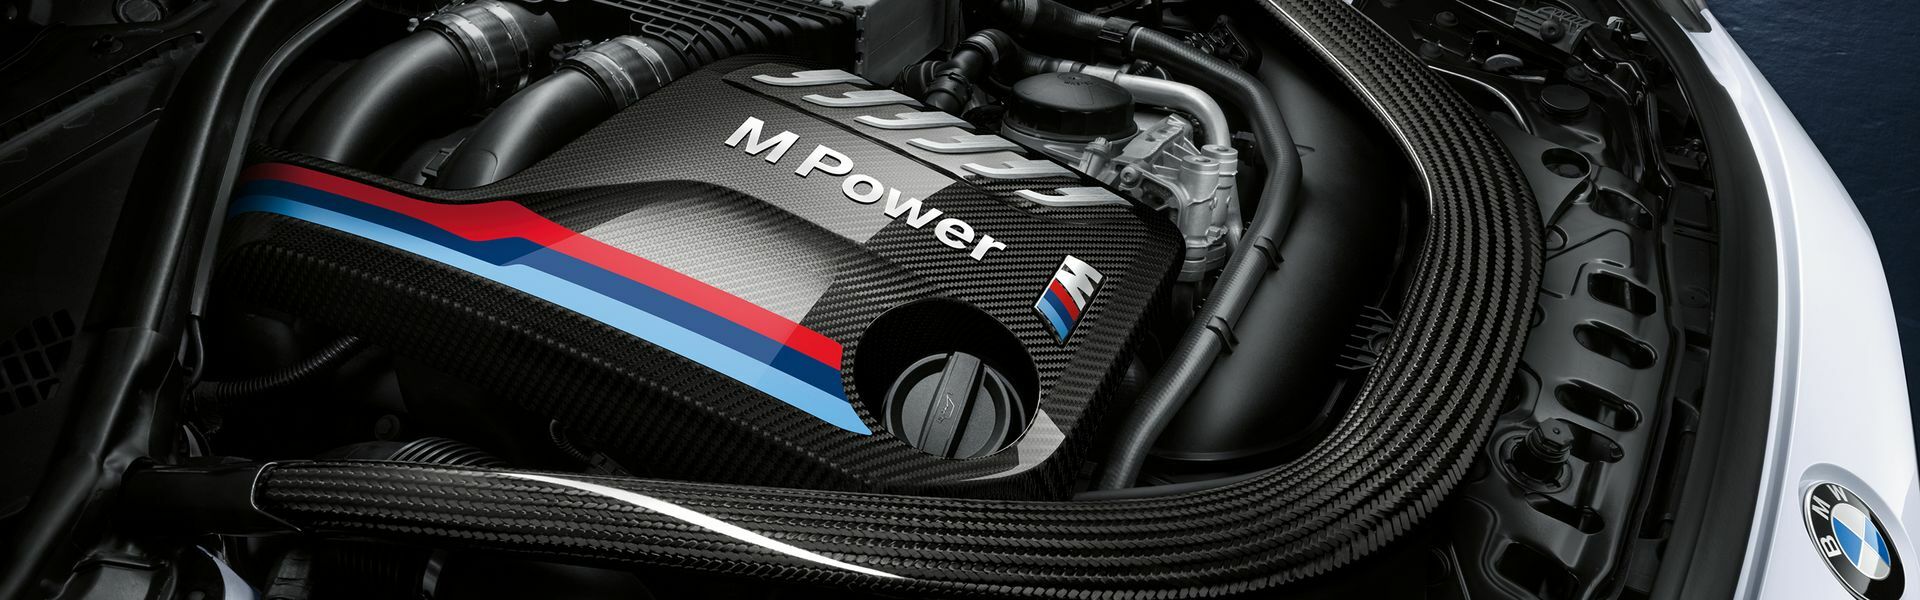 Zvýšení výkonu/ Softwarové úpravy/ Drobné performance díly pro automobil BMW Z M40i G29